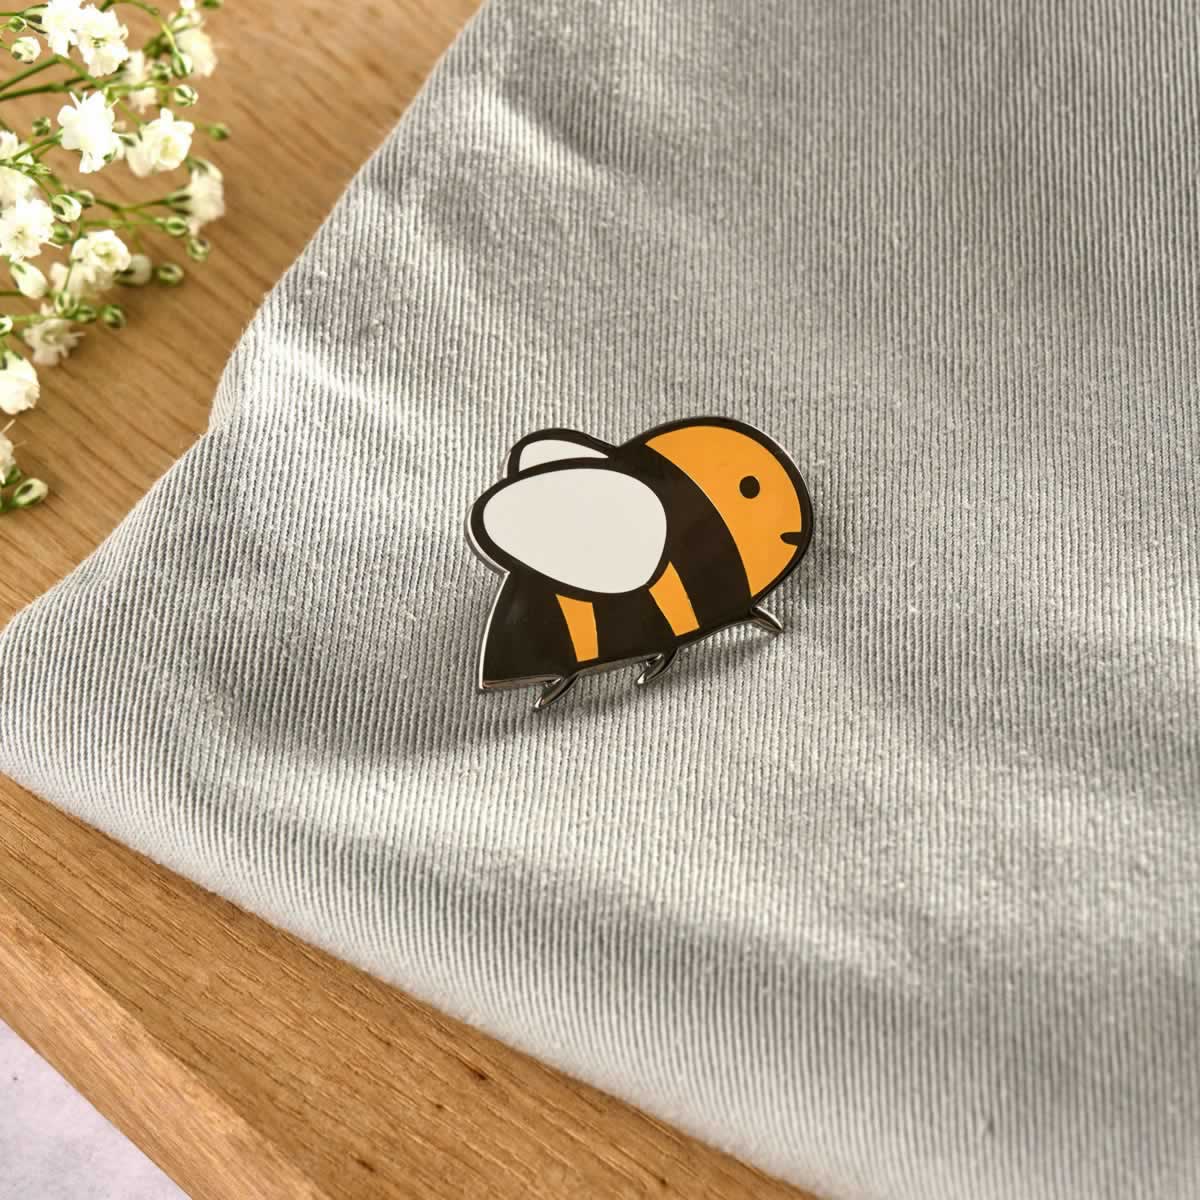 Bee Enamel Pin on bag